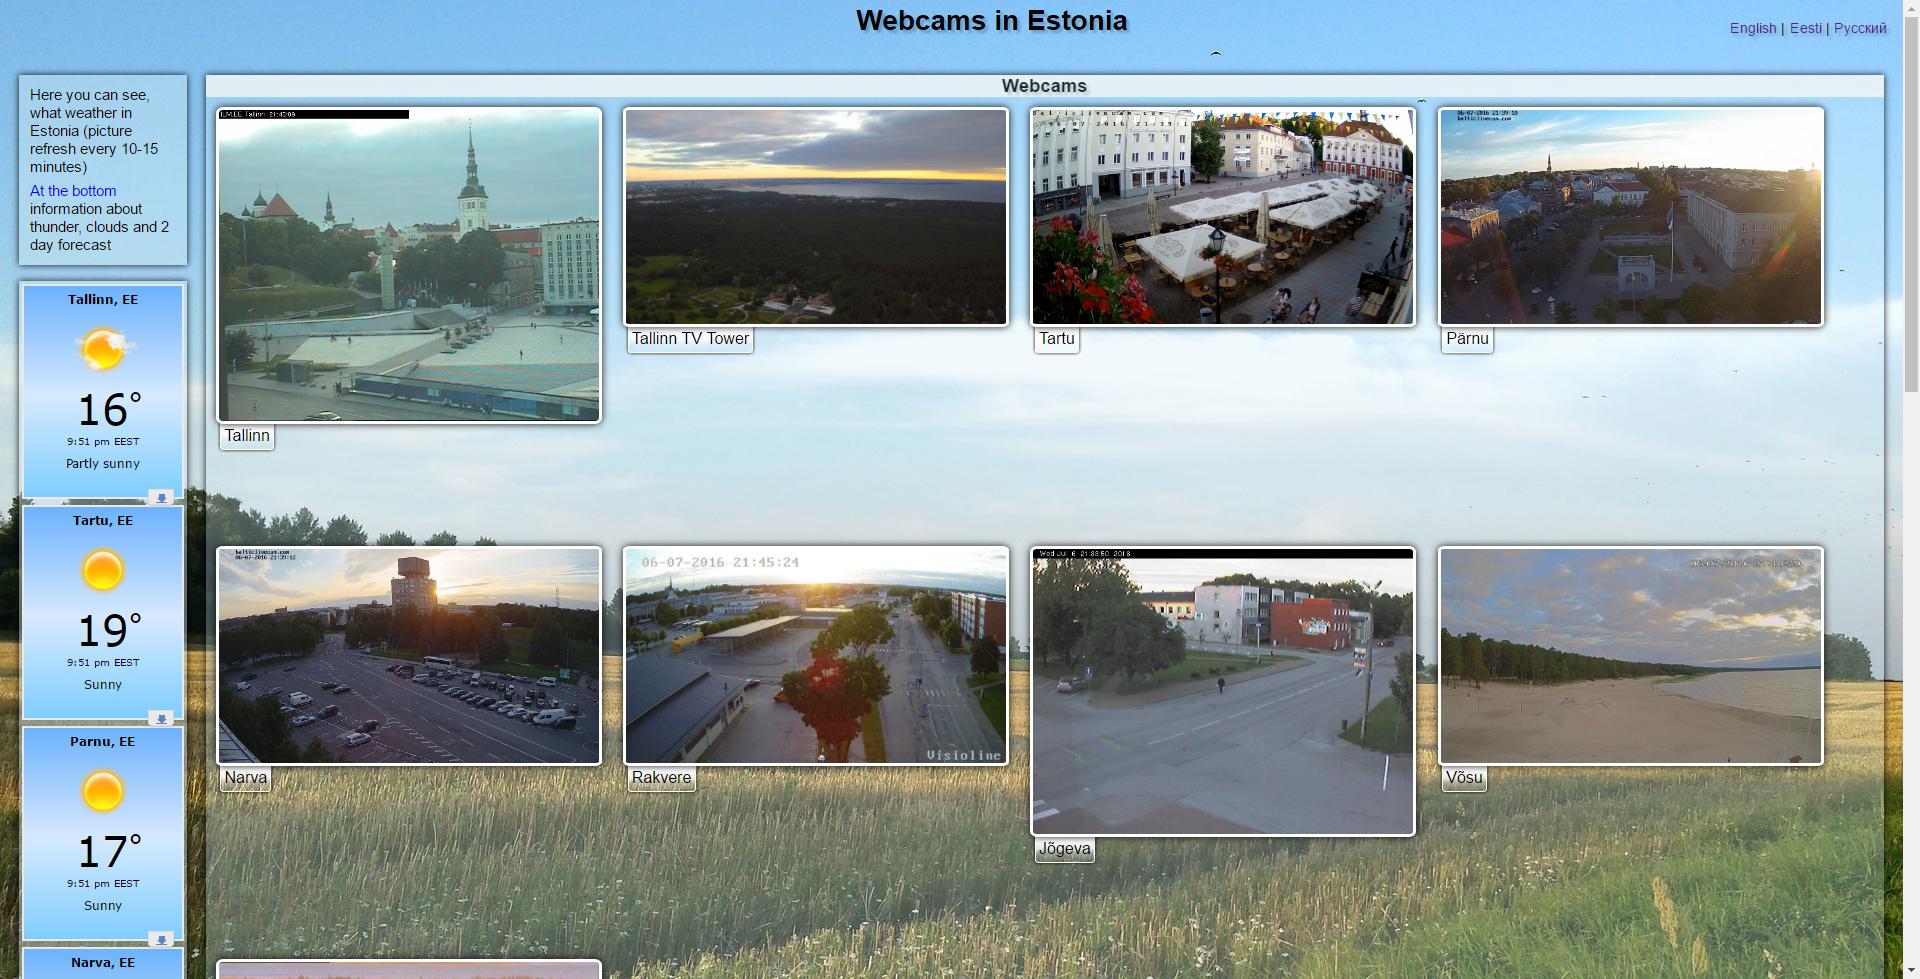 Estonian webcams